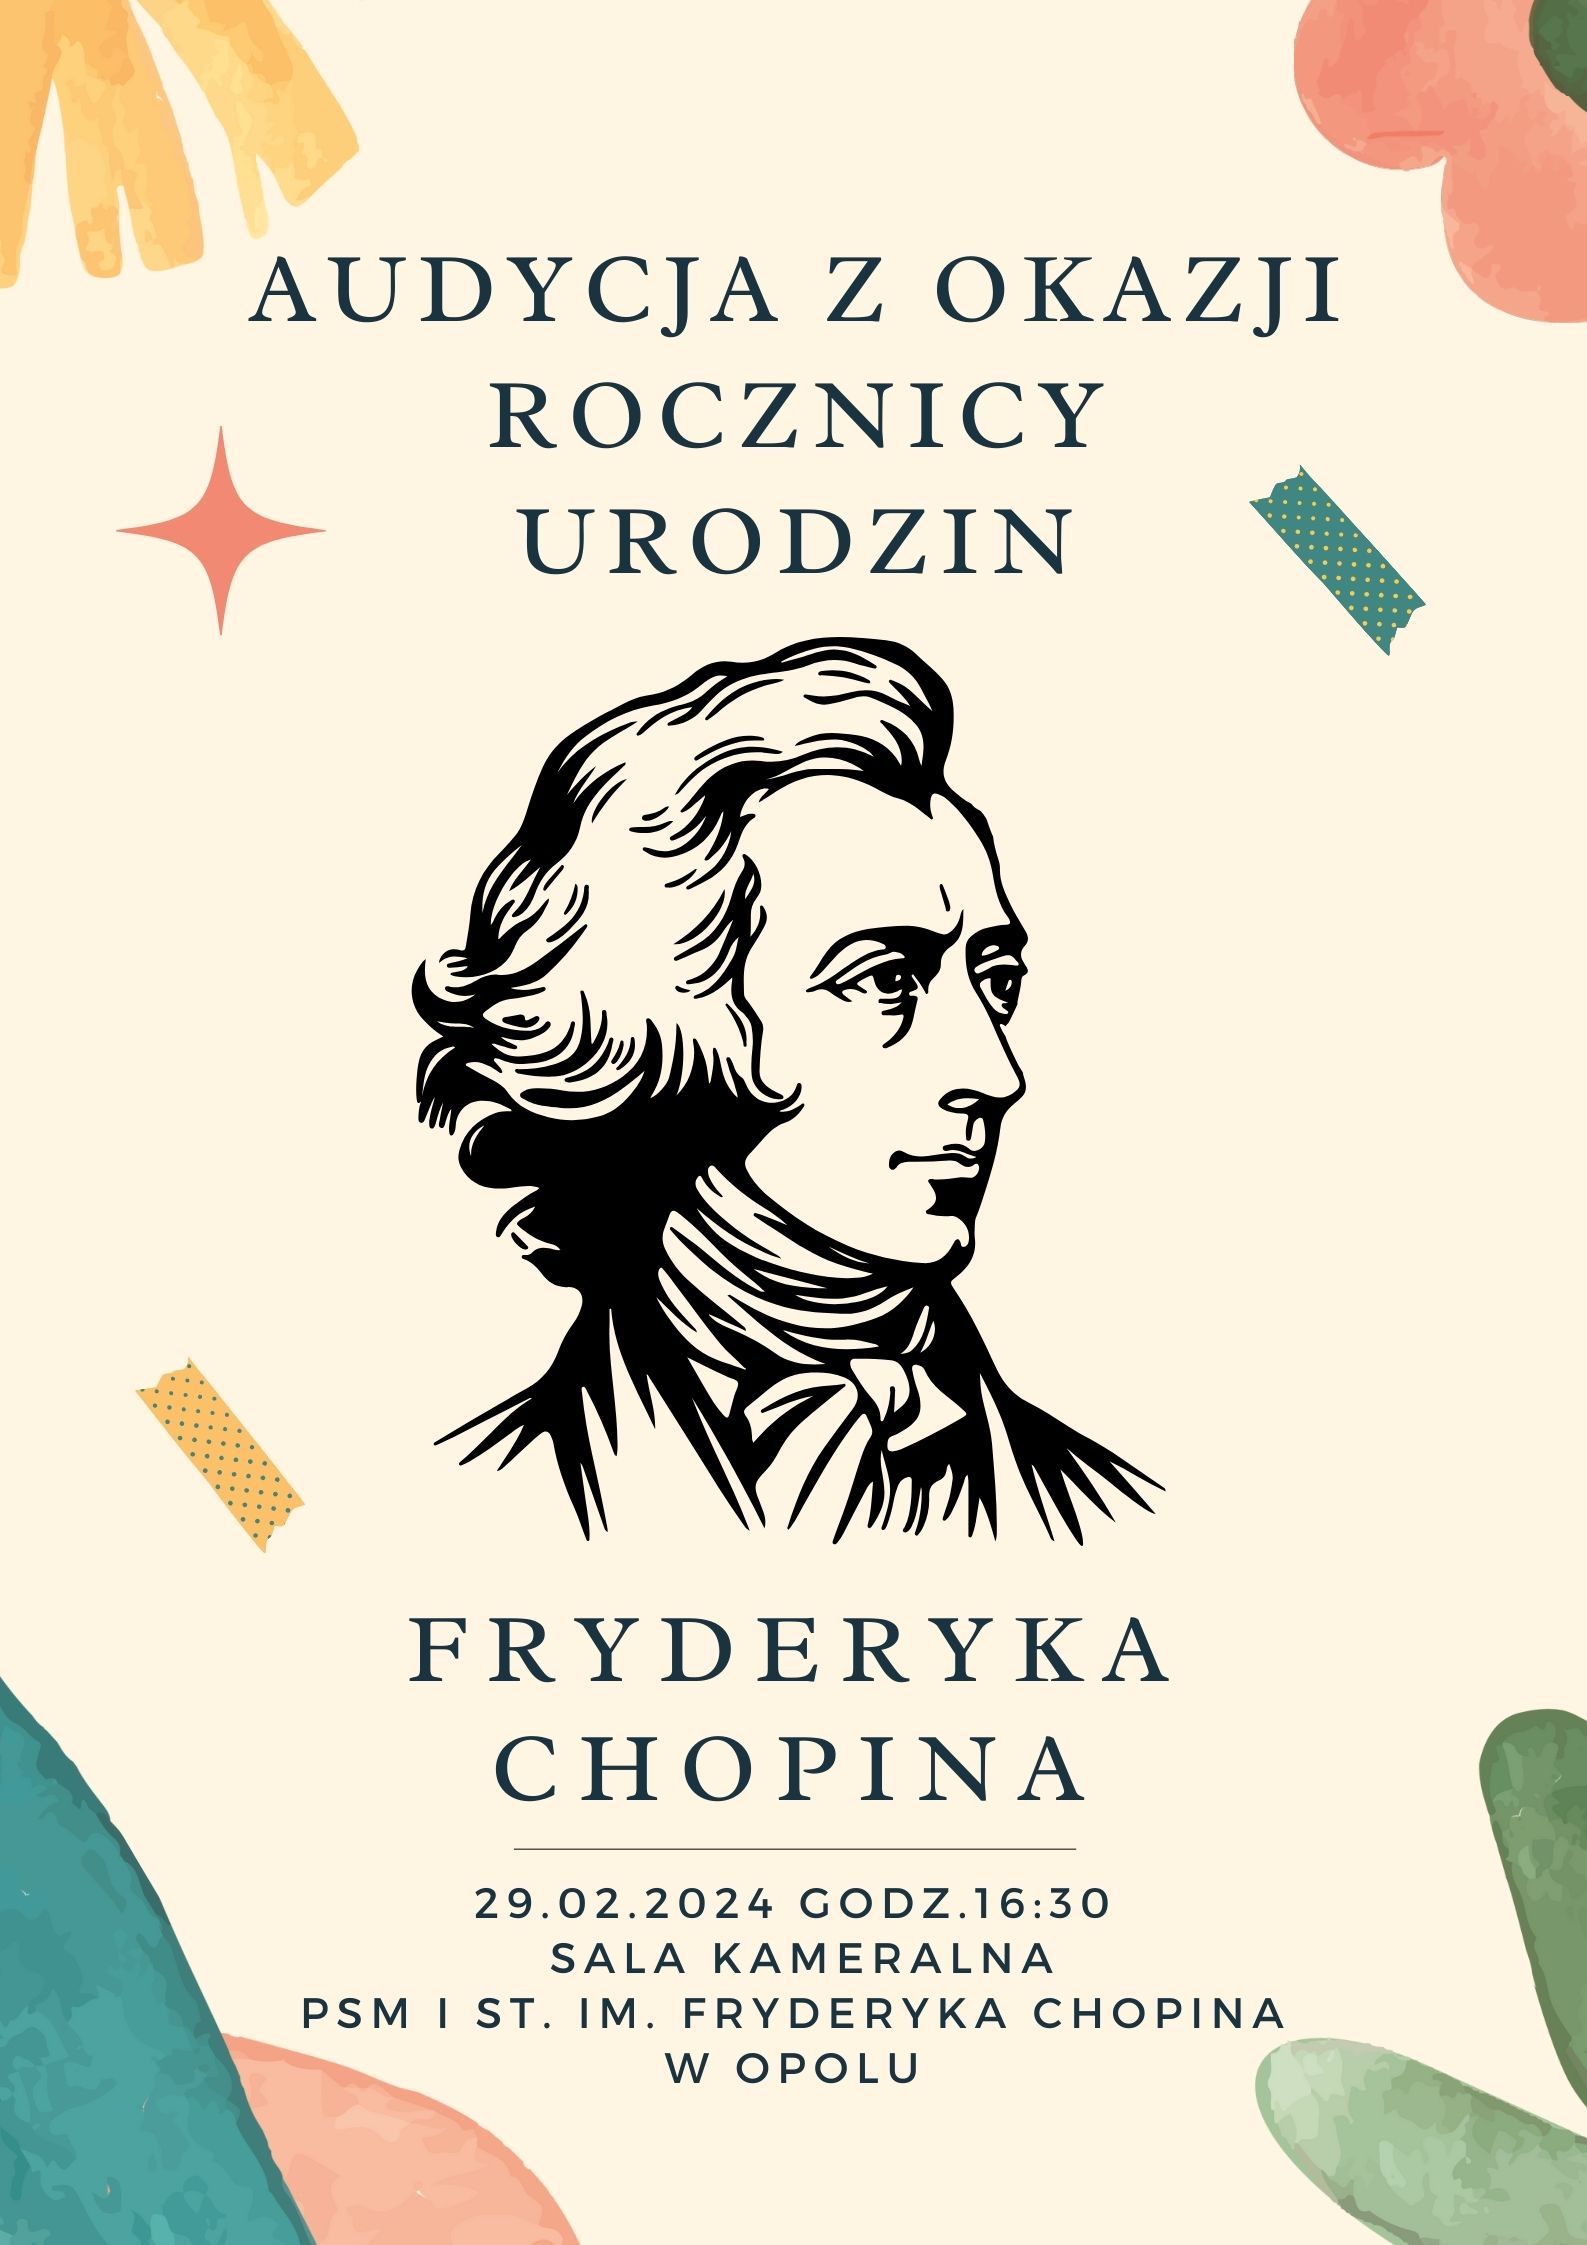 Audycja z okazji rocznicy urodzin Fryderyka Chopina